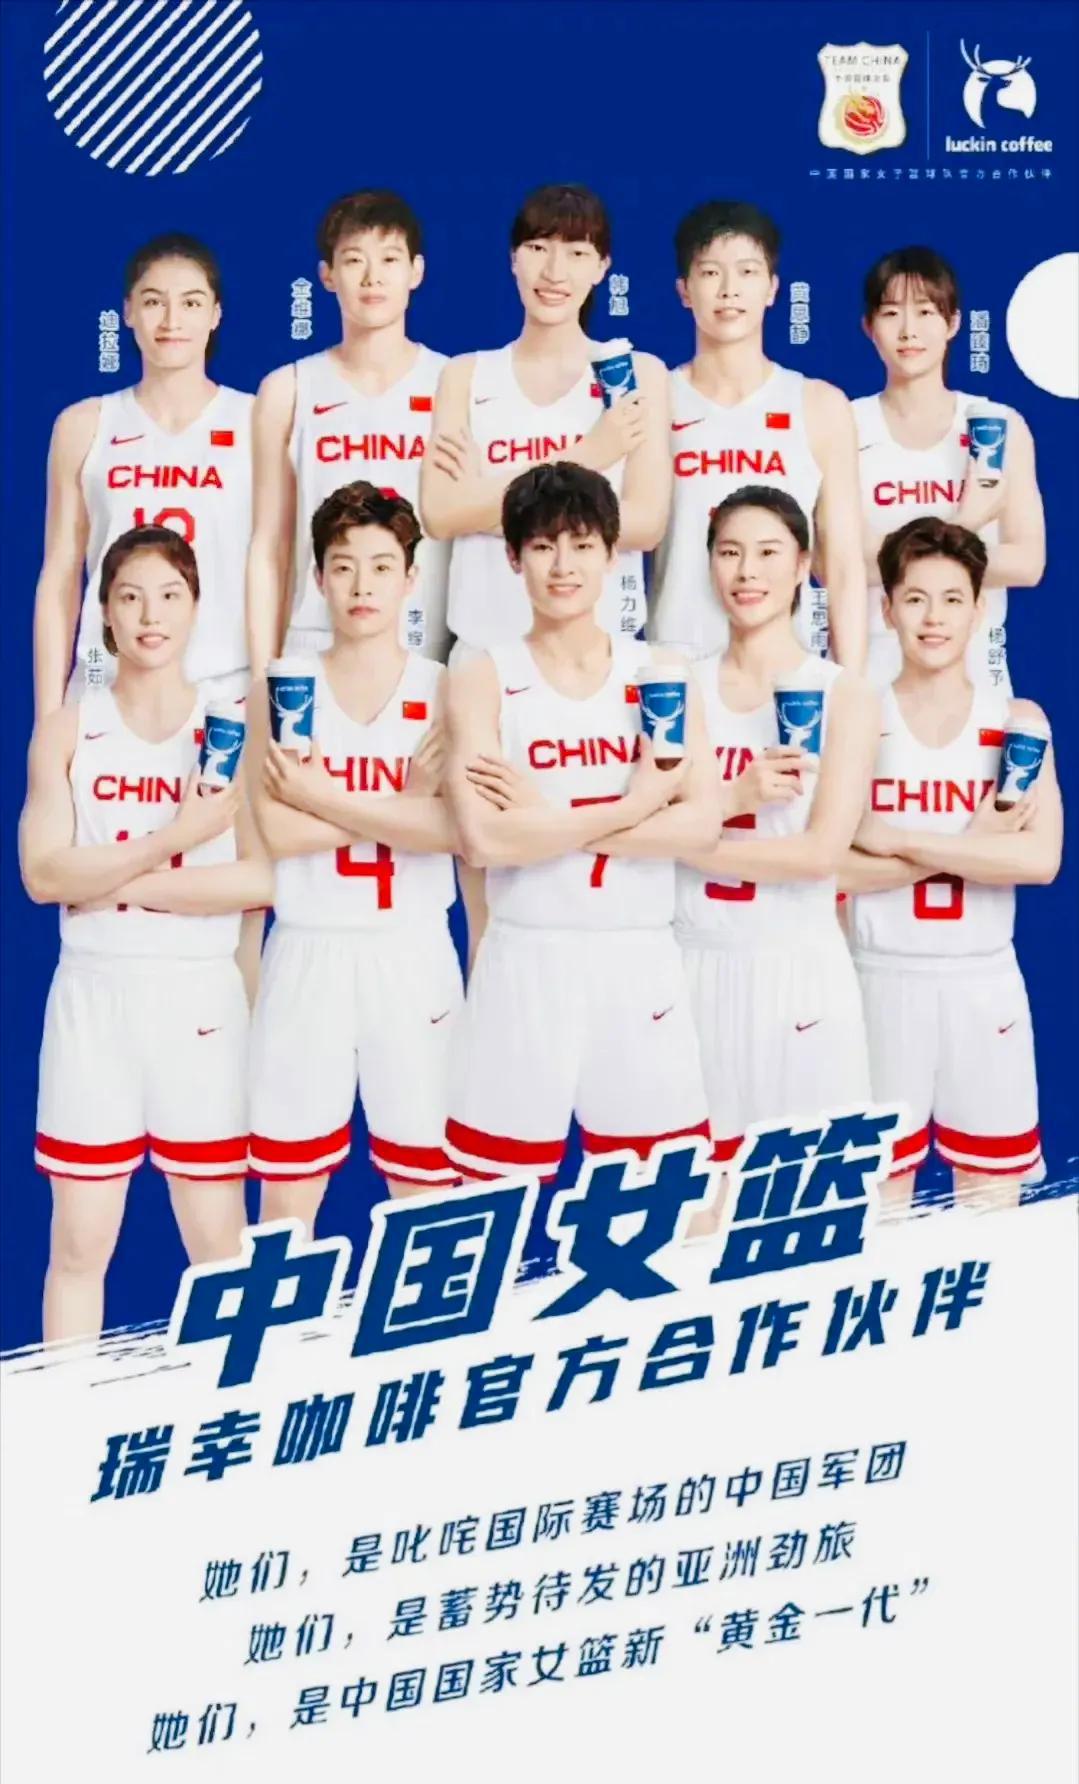 有意思，李梦凭实力又重新登上中国女篮官方合作伙伴瑞幸咖啡的海报！本次女篮亚洲杯前